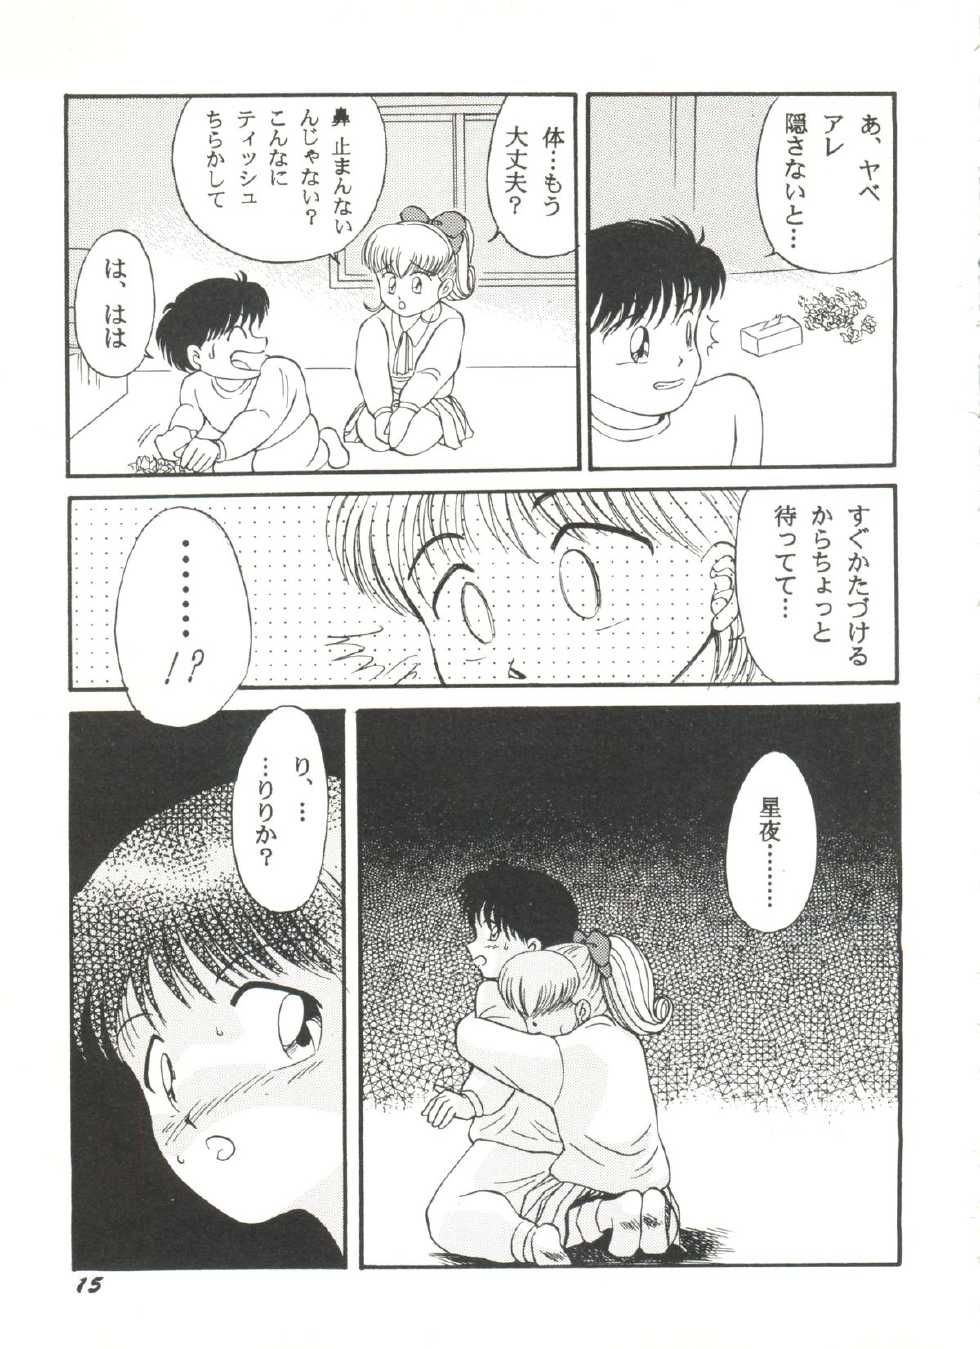 [Anthology] Doujin Anthology Bishoujo Gumi 6 (Various) - Page 19